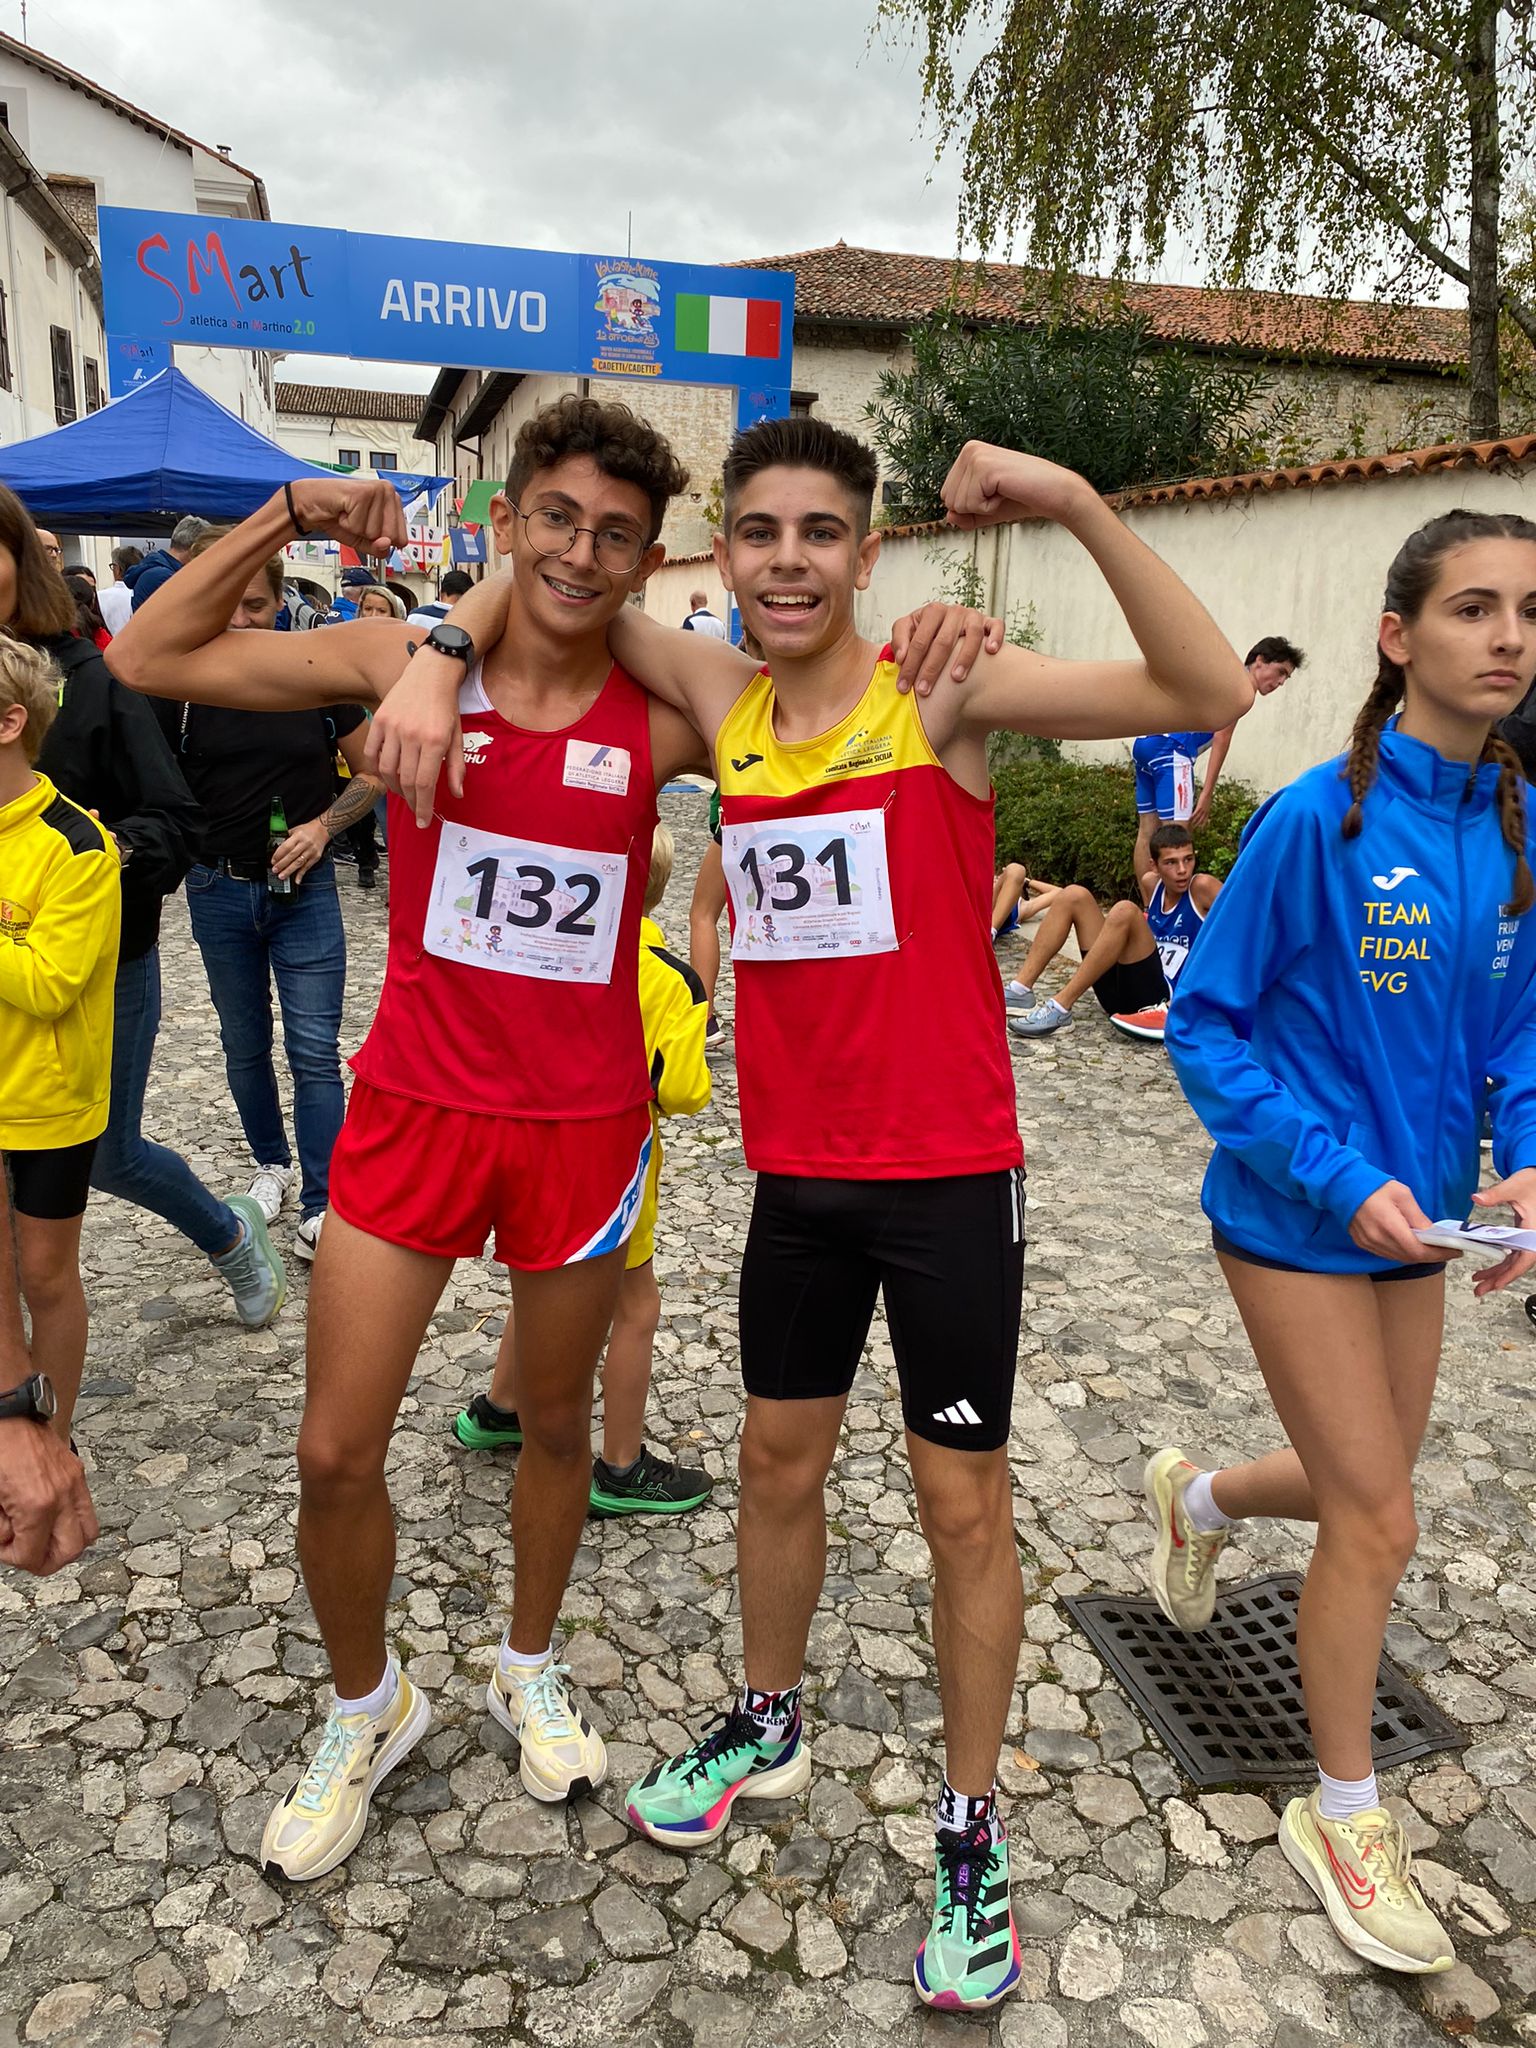 Il giovane atleta bagherese Gabriele Tarantello Gargano primo dei siciliani al trofeo nazionale di corsa su strada cadetti. Le congratulazioni dell'amministrazione comunale.